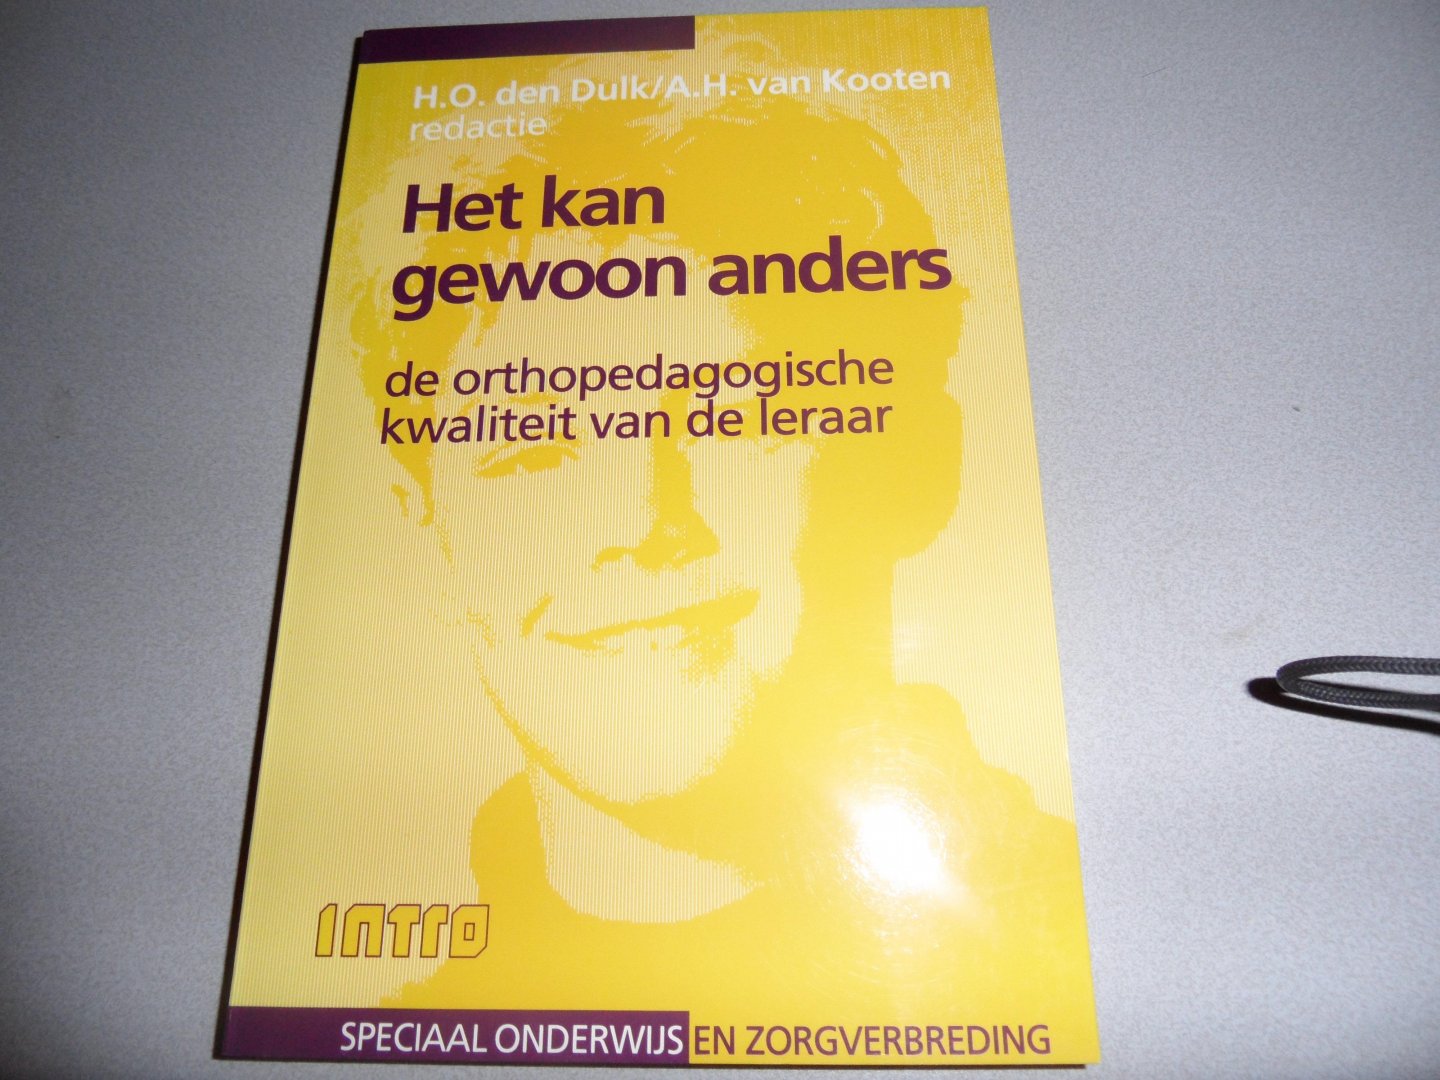 Dulk, H.O. den / Kooten, A.H. van - Het kan gewoon anders, de orthopedaogische kwaliteit van de leraar